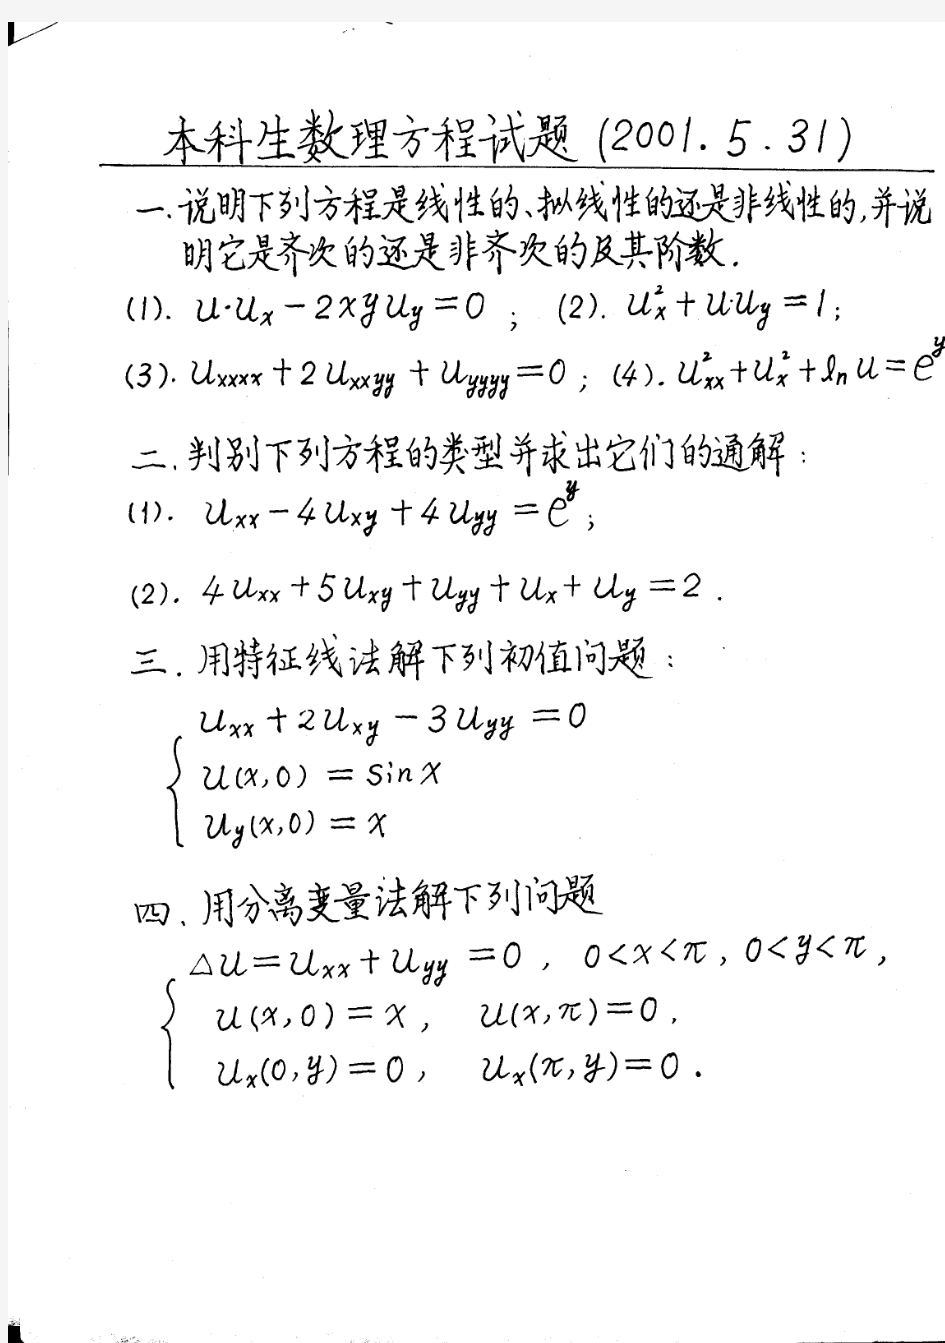 哈工大数理方程--试卷(01-04)